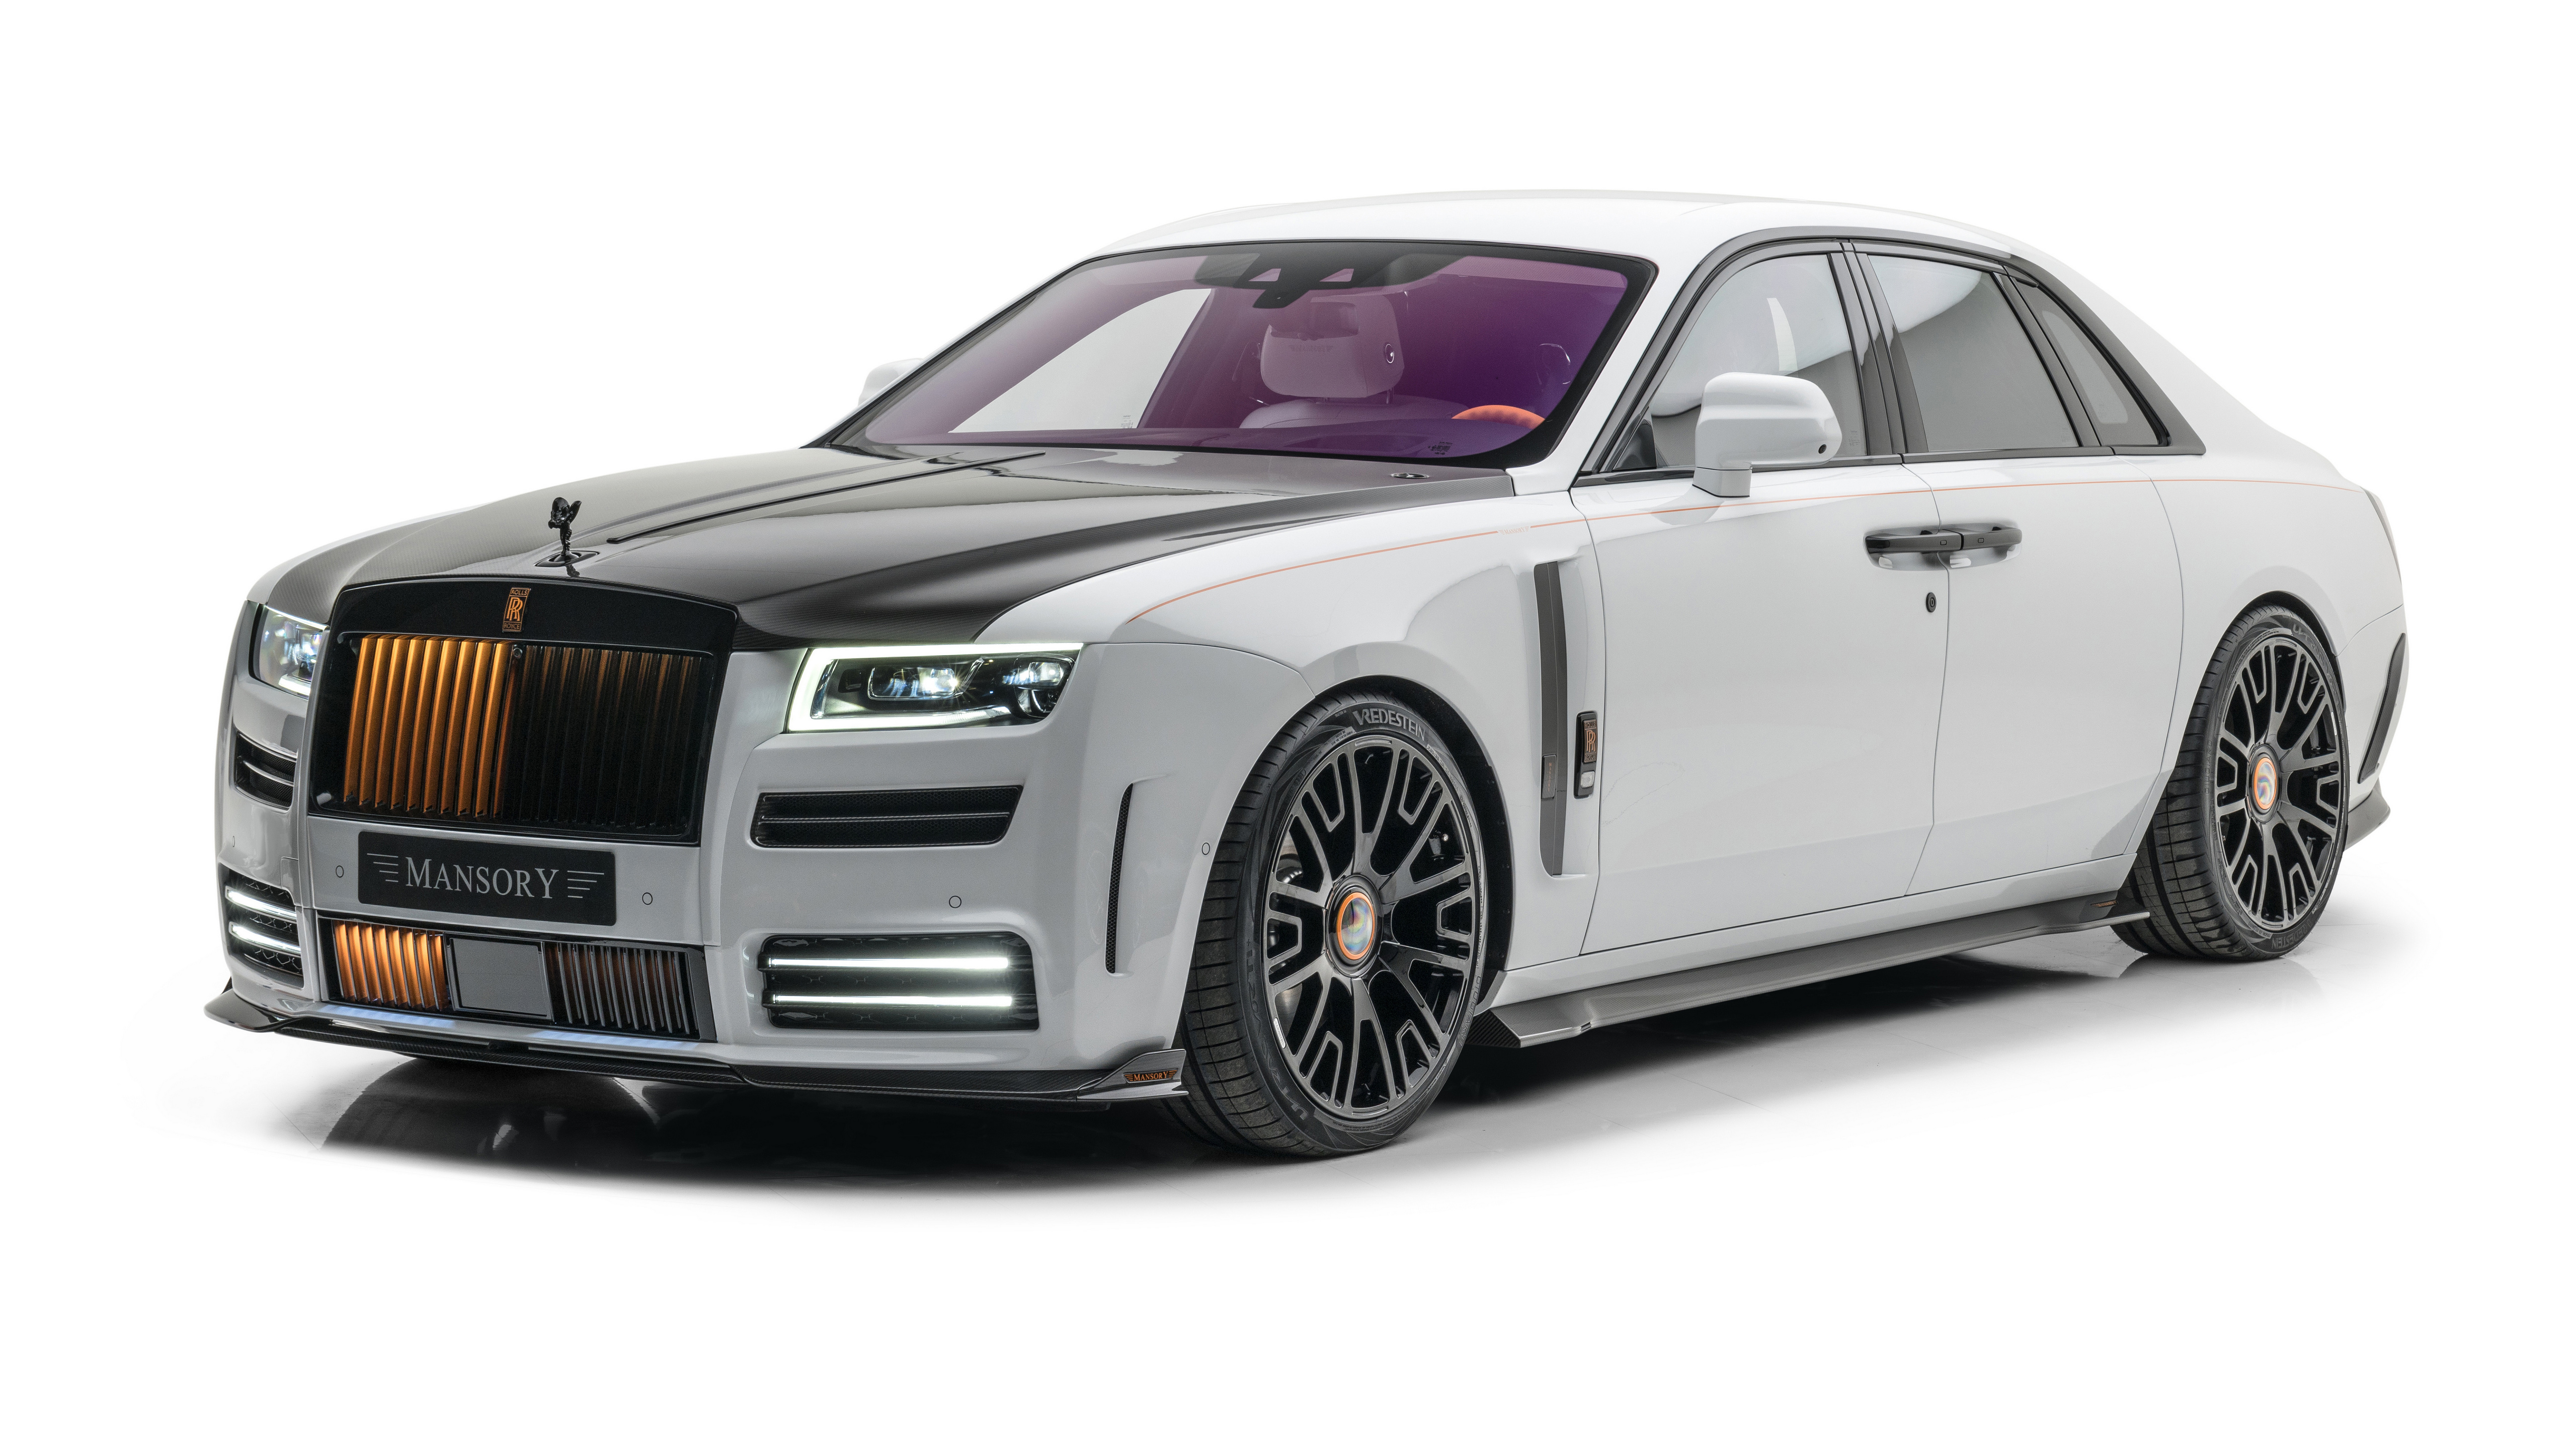 Фото Mansory, Rolls Royce Ghost, 2021, тюнинг, фешенебельный автомобиль, серебристая машина, белый фон, машины - бесплатные картинки на Fonwall